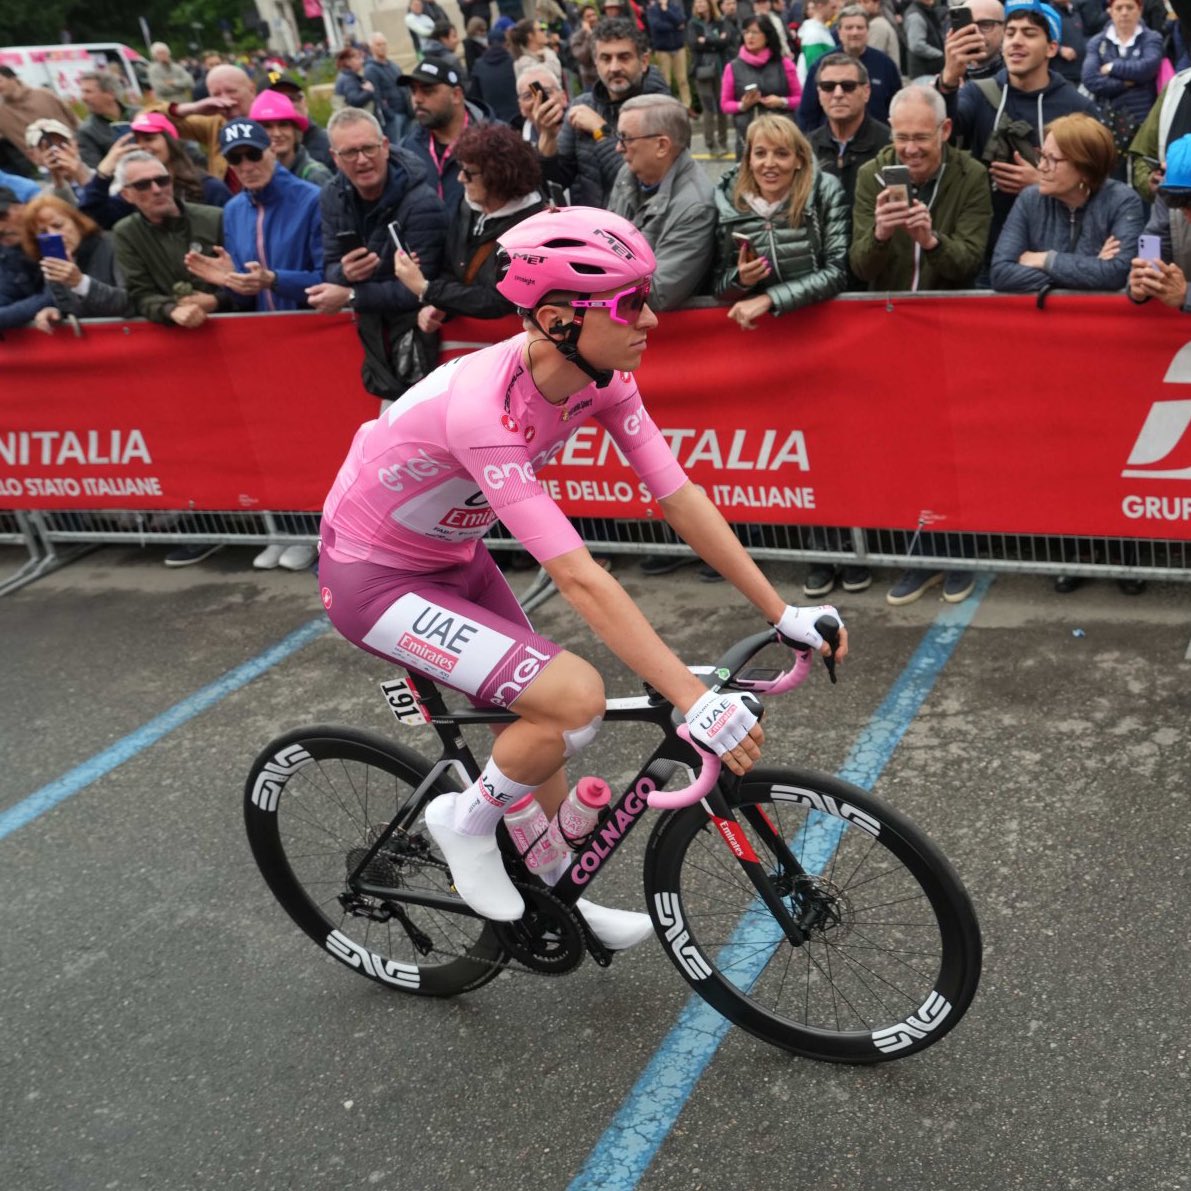 Pogacar ya vestido de rosa, pero con la pantaloneta violeta… Me encantaría saber porque eligió ese color para combinar en su primer día como líder del Giro de Italia 🤣🇮🇹